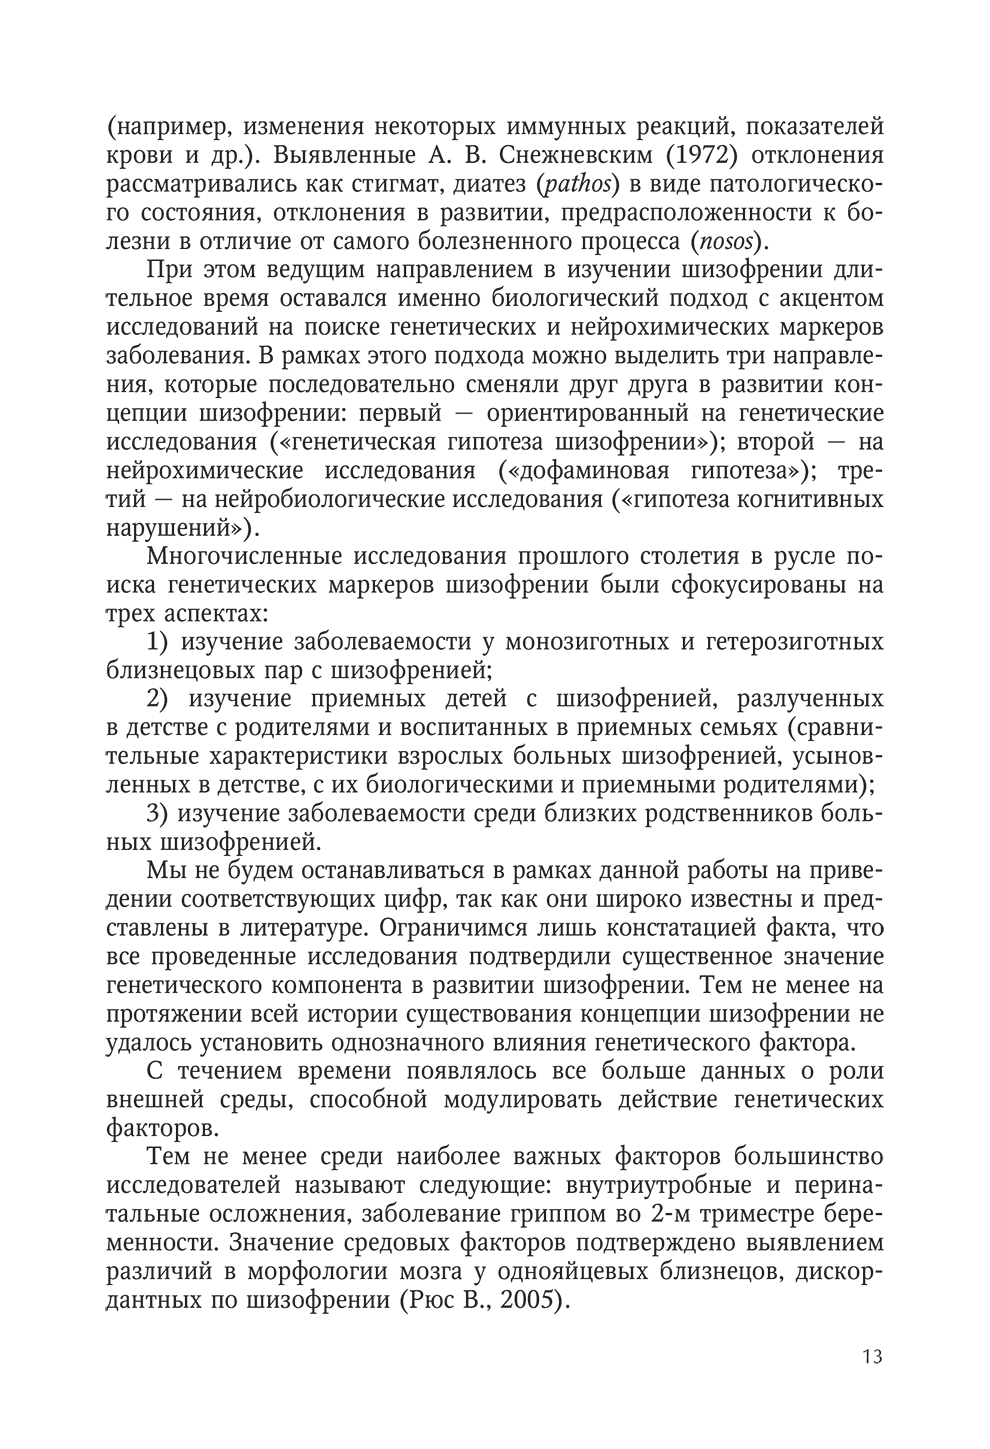 Пример страницы из книги "Интегративная модель психотерапии эндогенных психических расстройств" - Гусева О. В., Коцюбинский А. П.